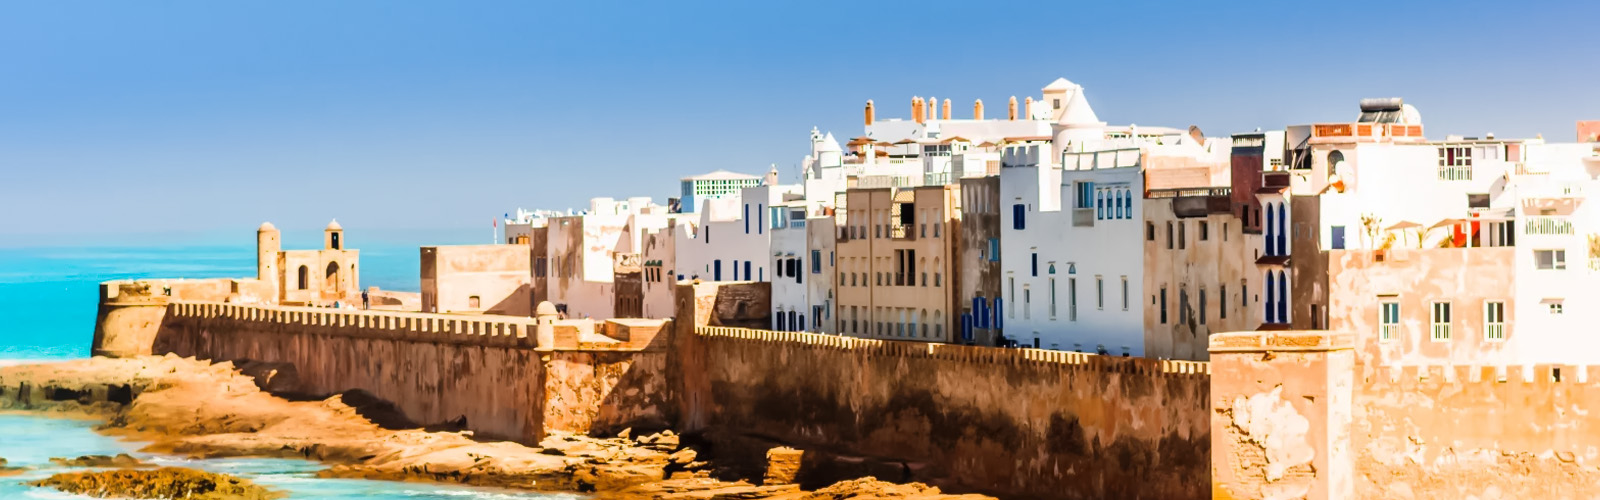 Essaouira Travel morocco